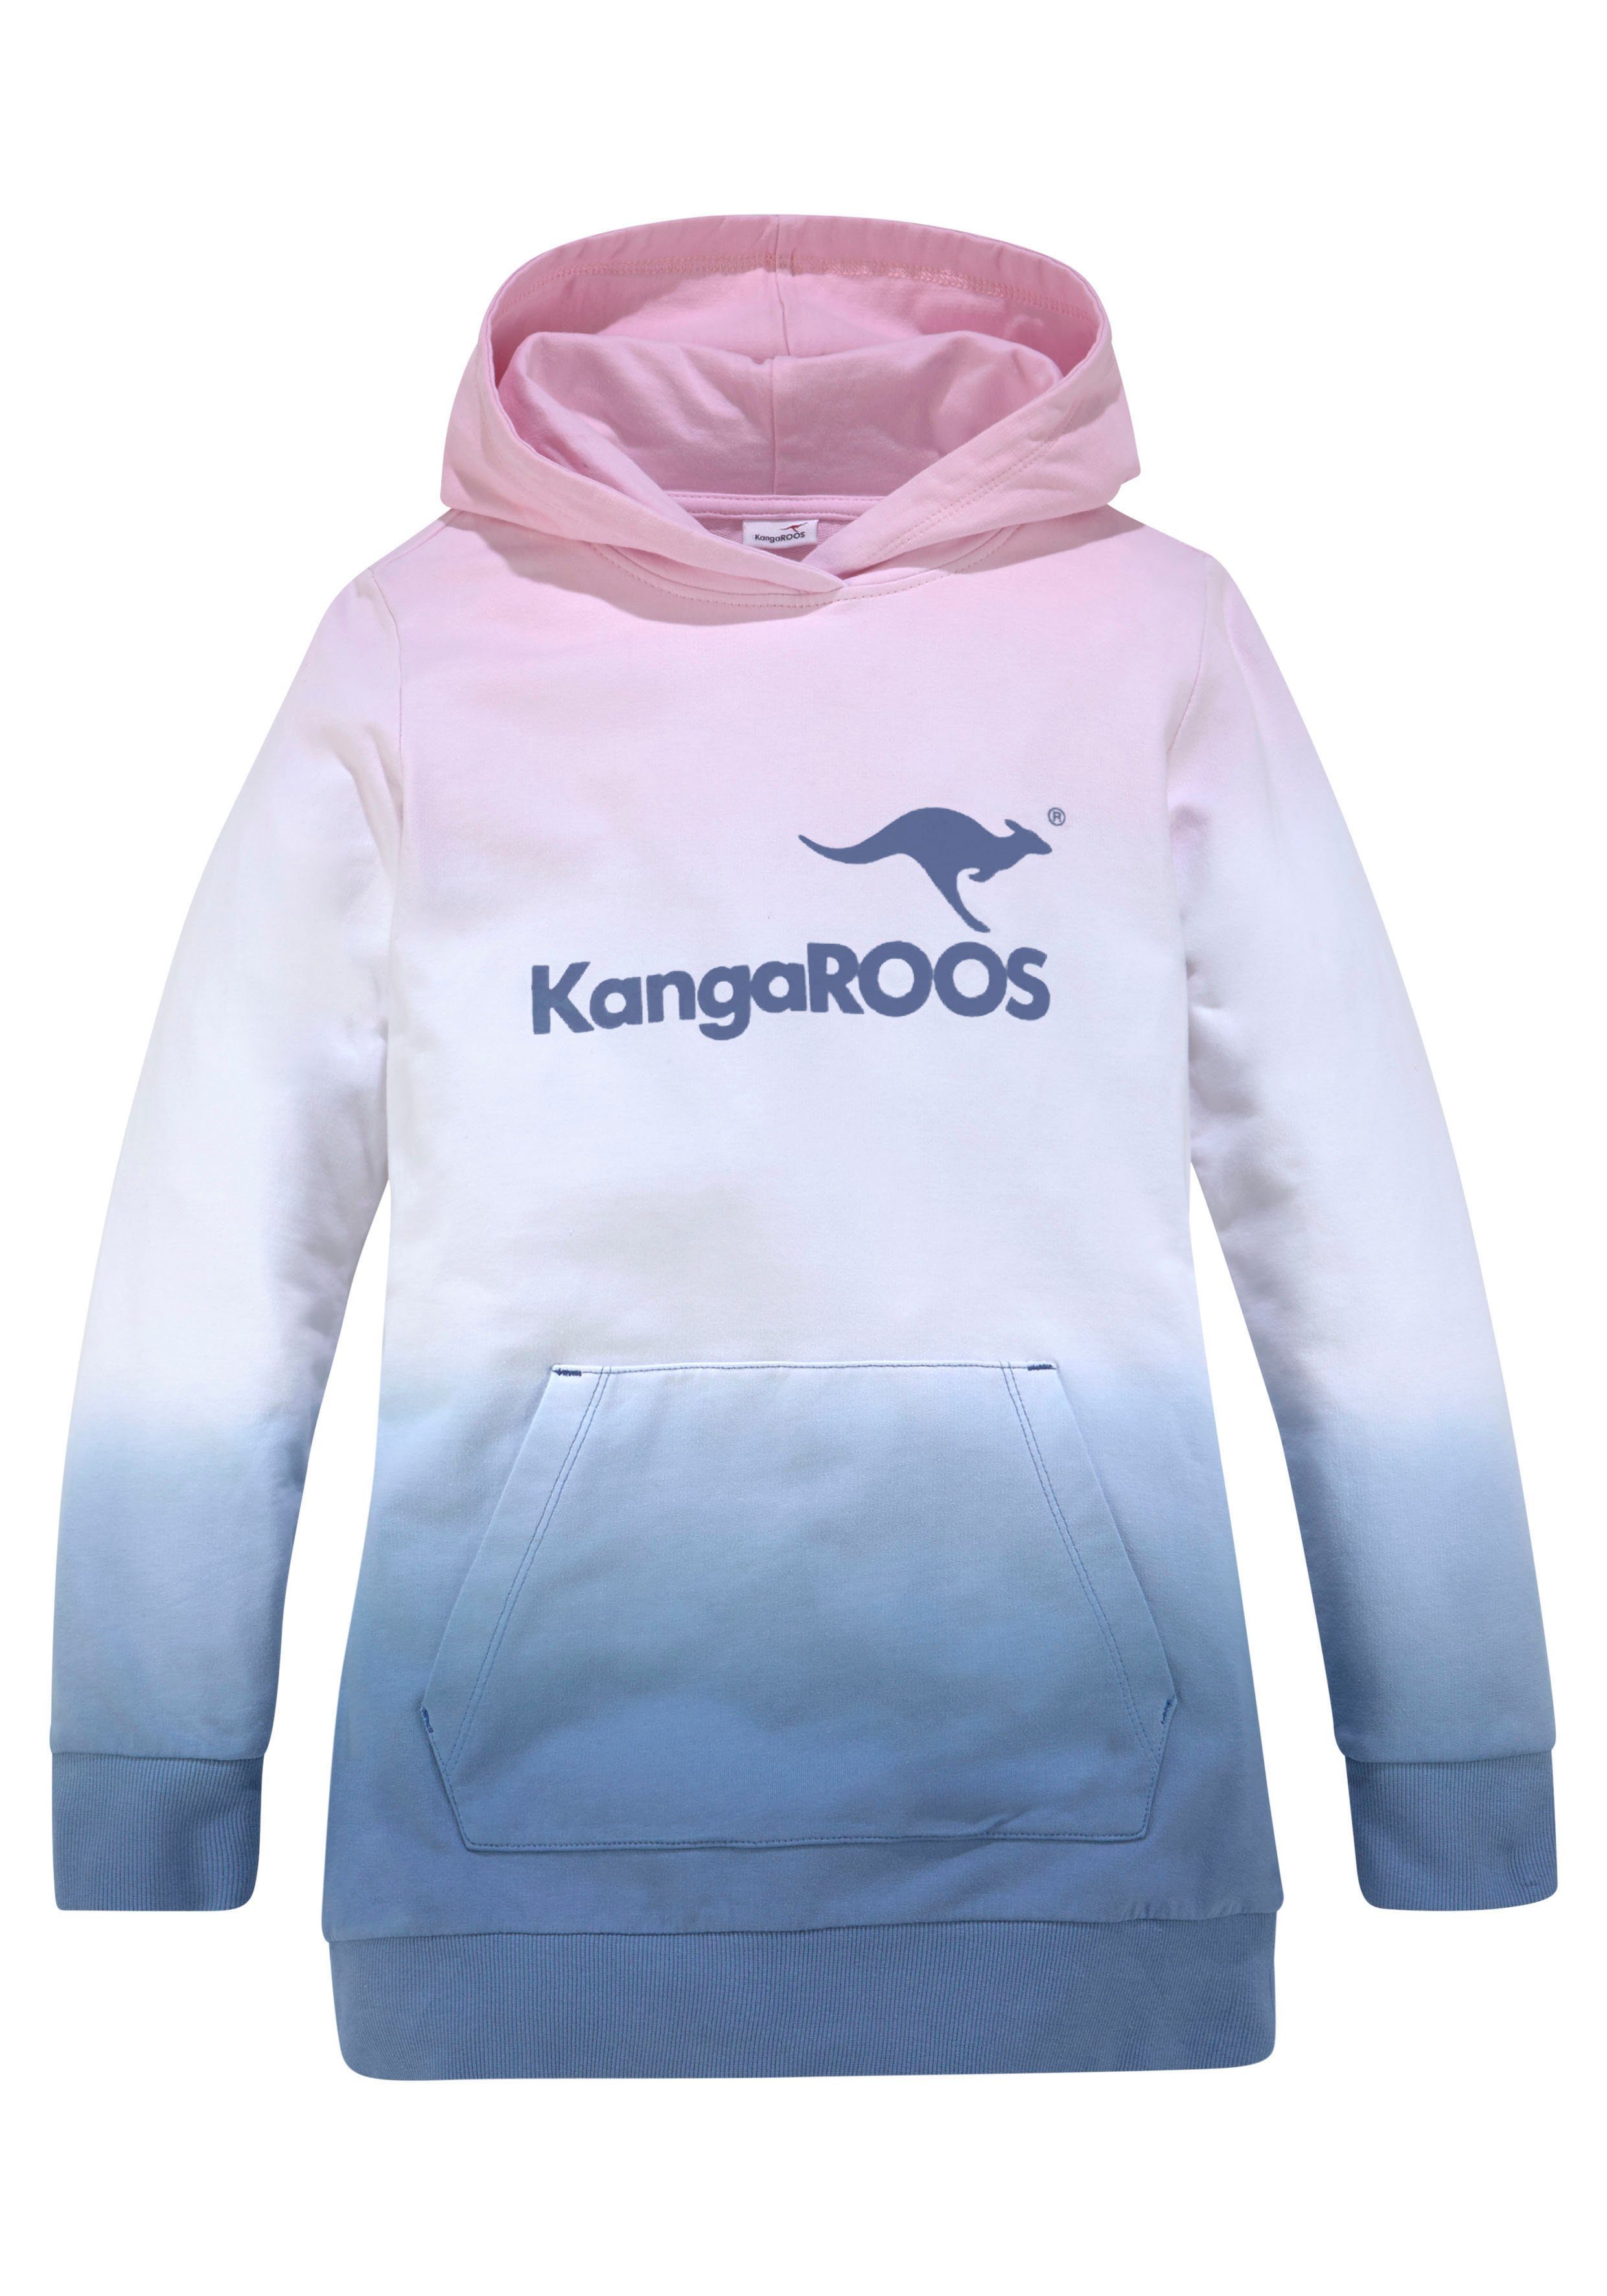 Kapuzensweatshirt KangaROOS im Farbverlauf modischen